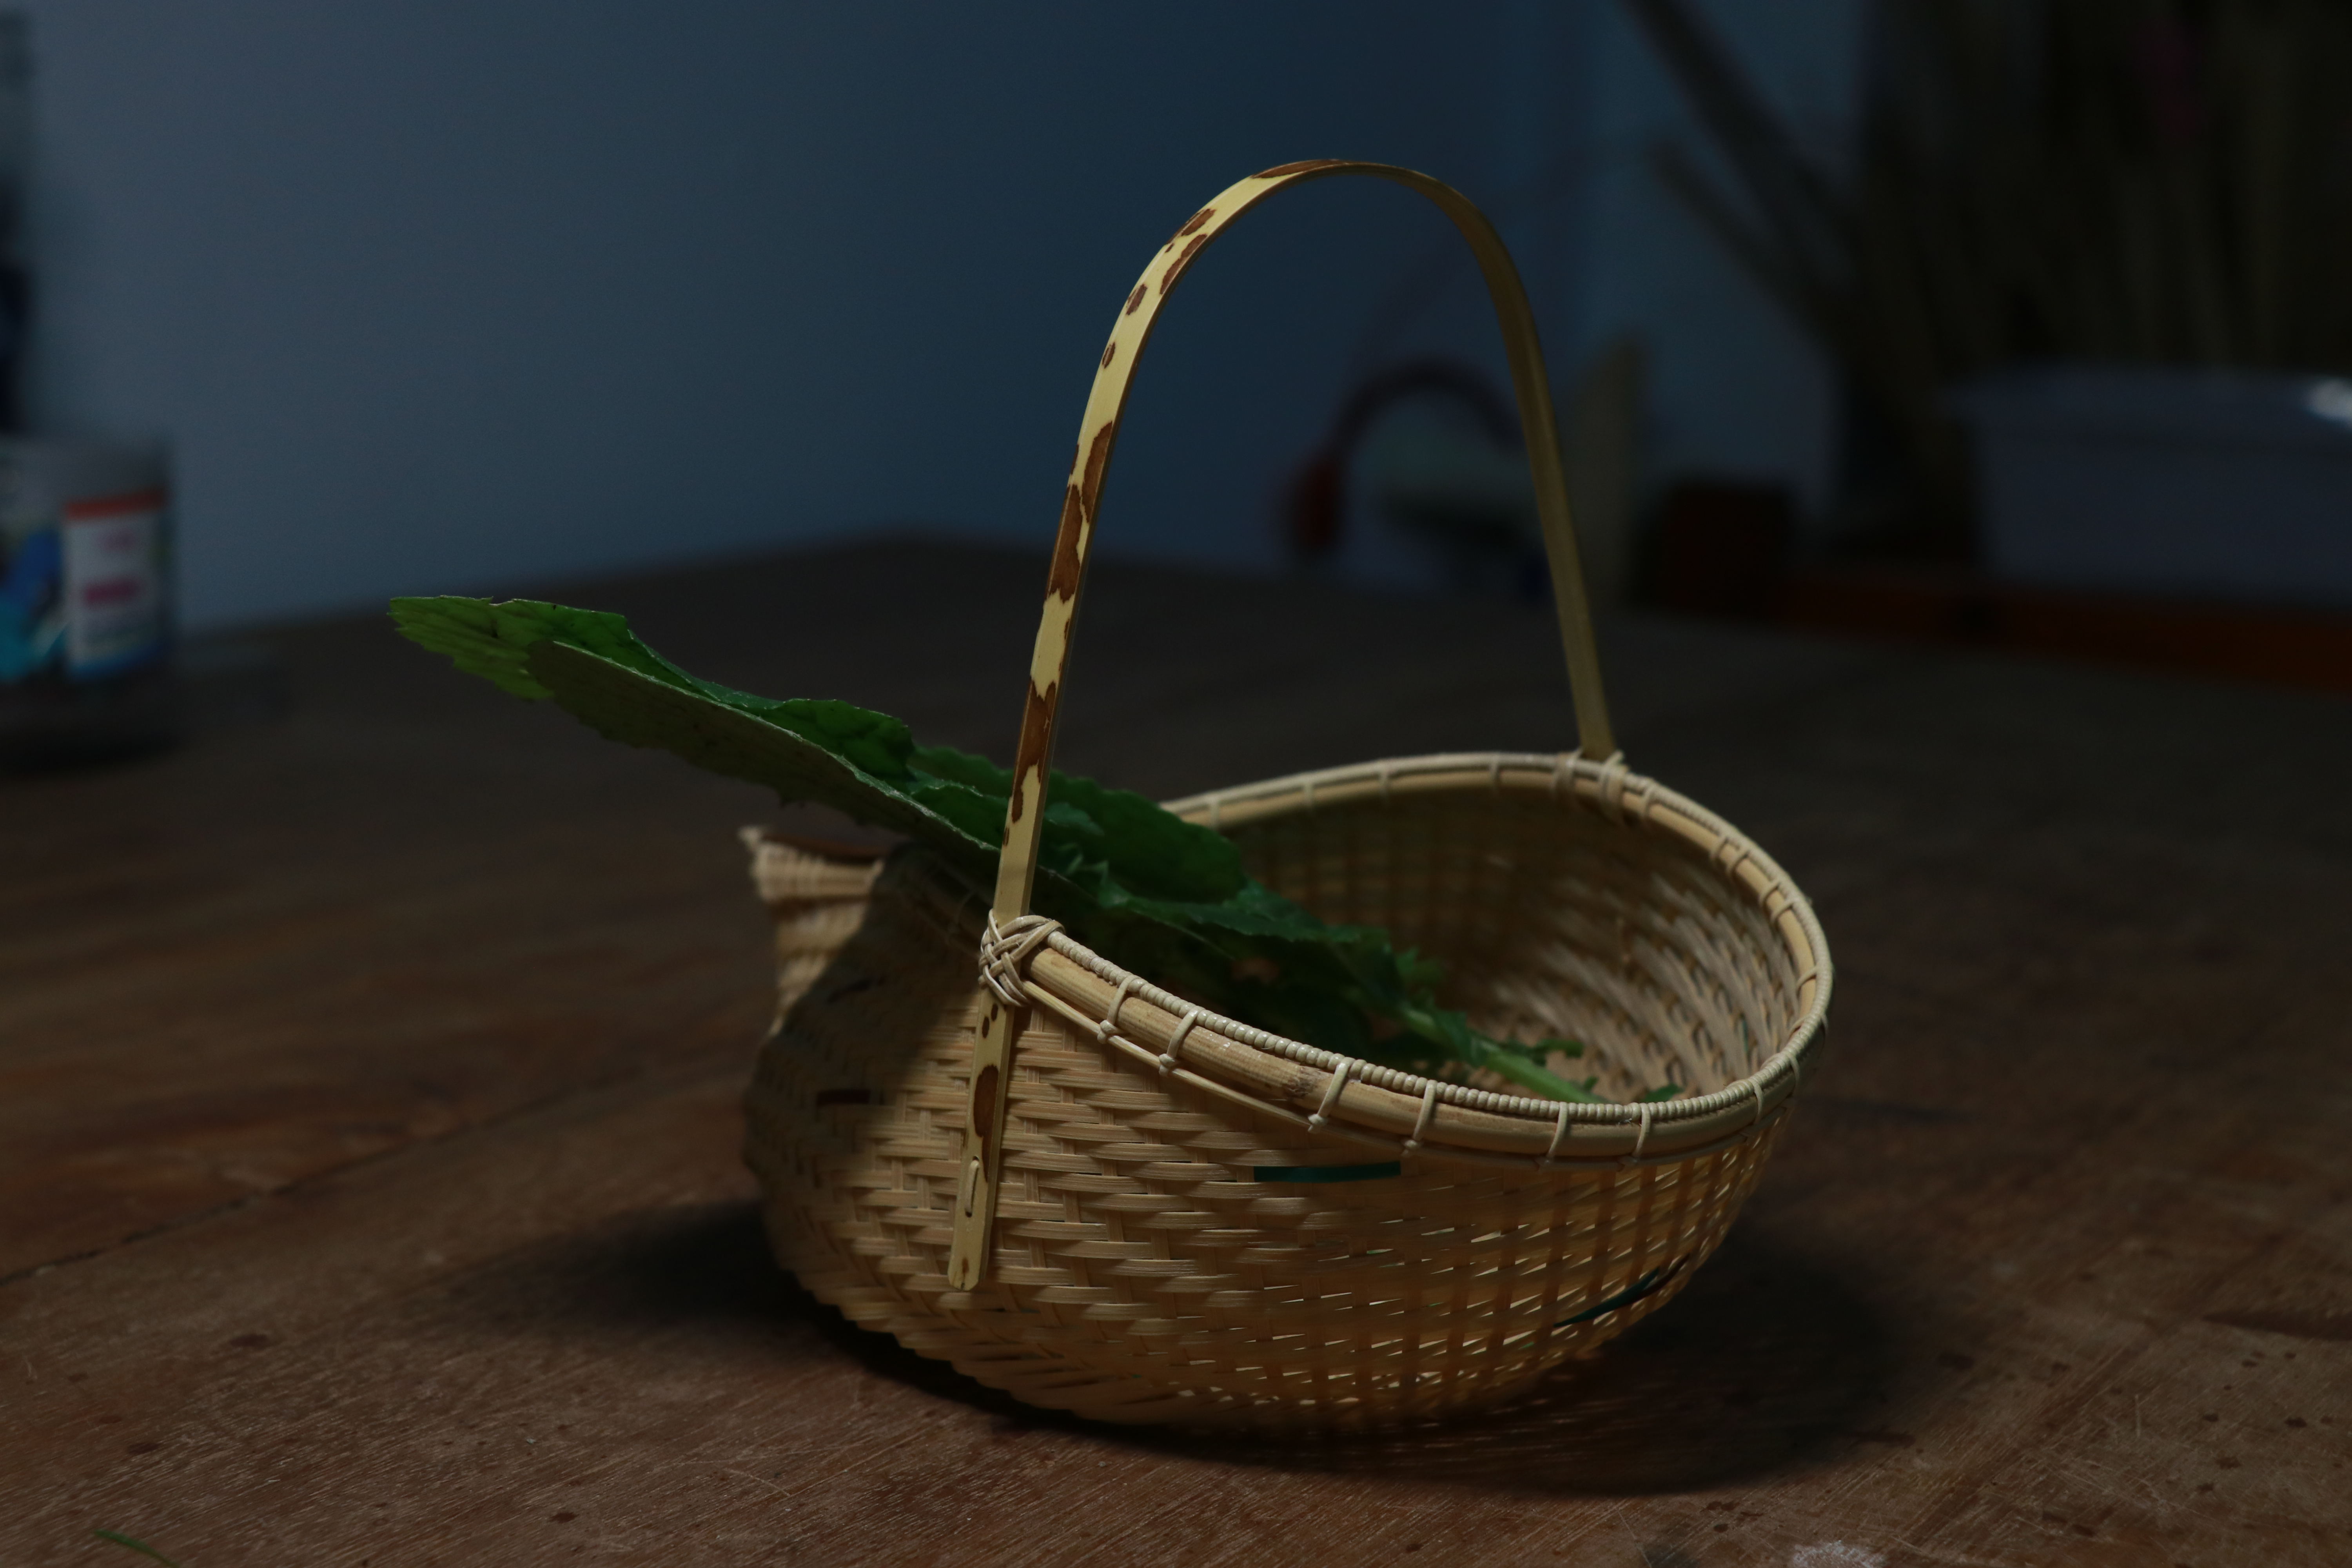 竹编小花篮 这款小篮子,是作为传统圆菜篮的一种延伸,器物圈口做了小